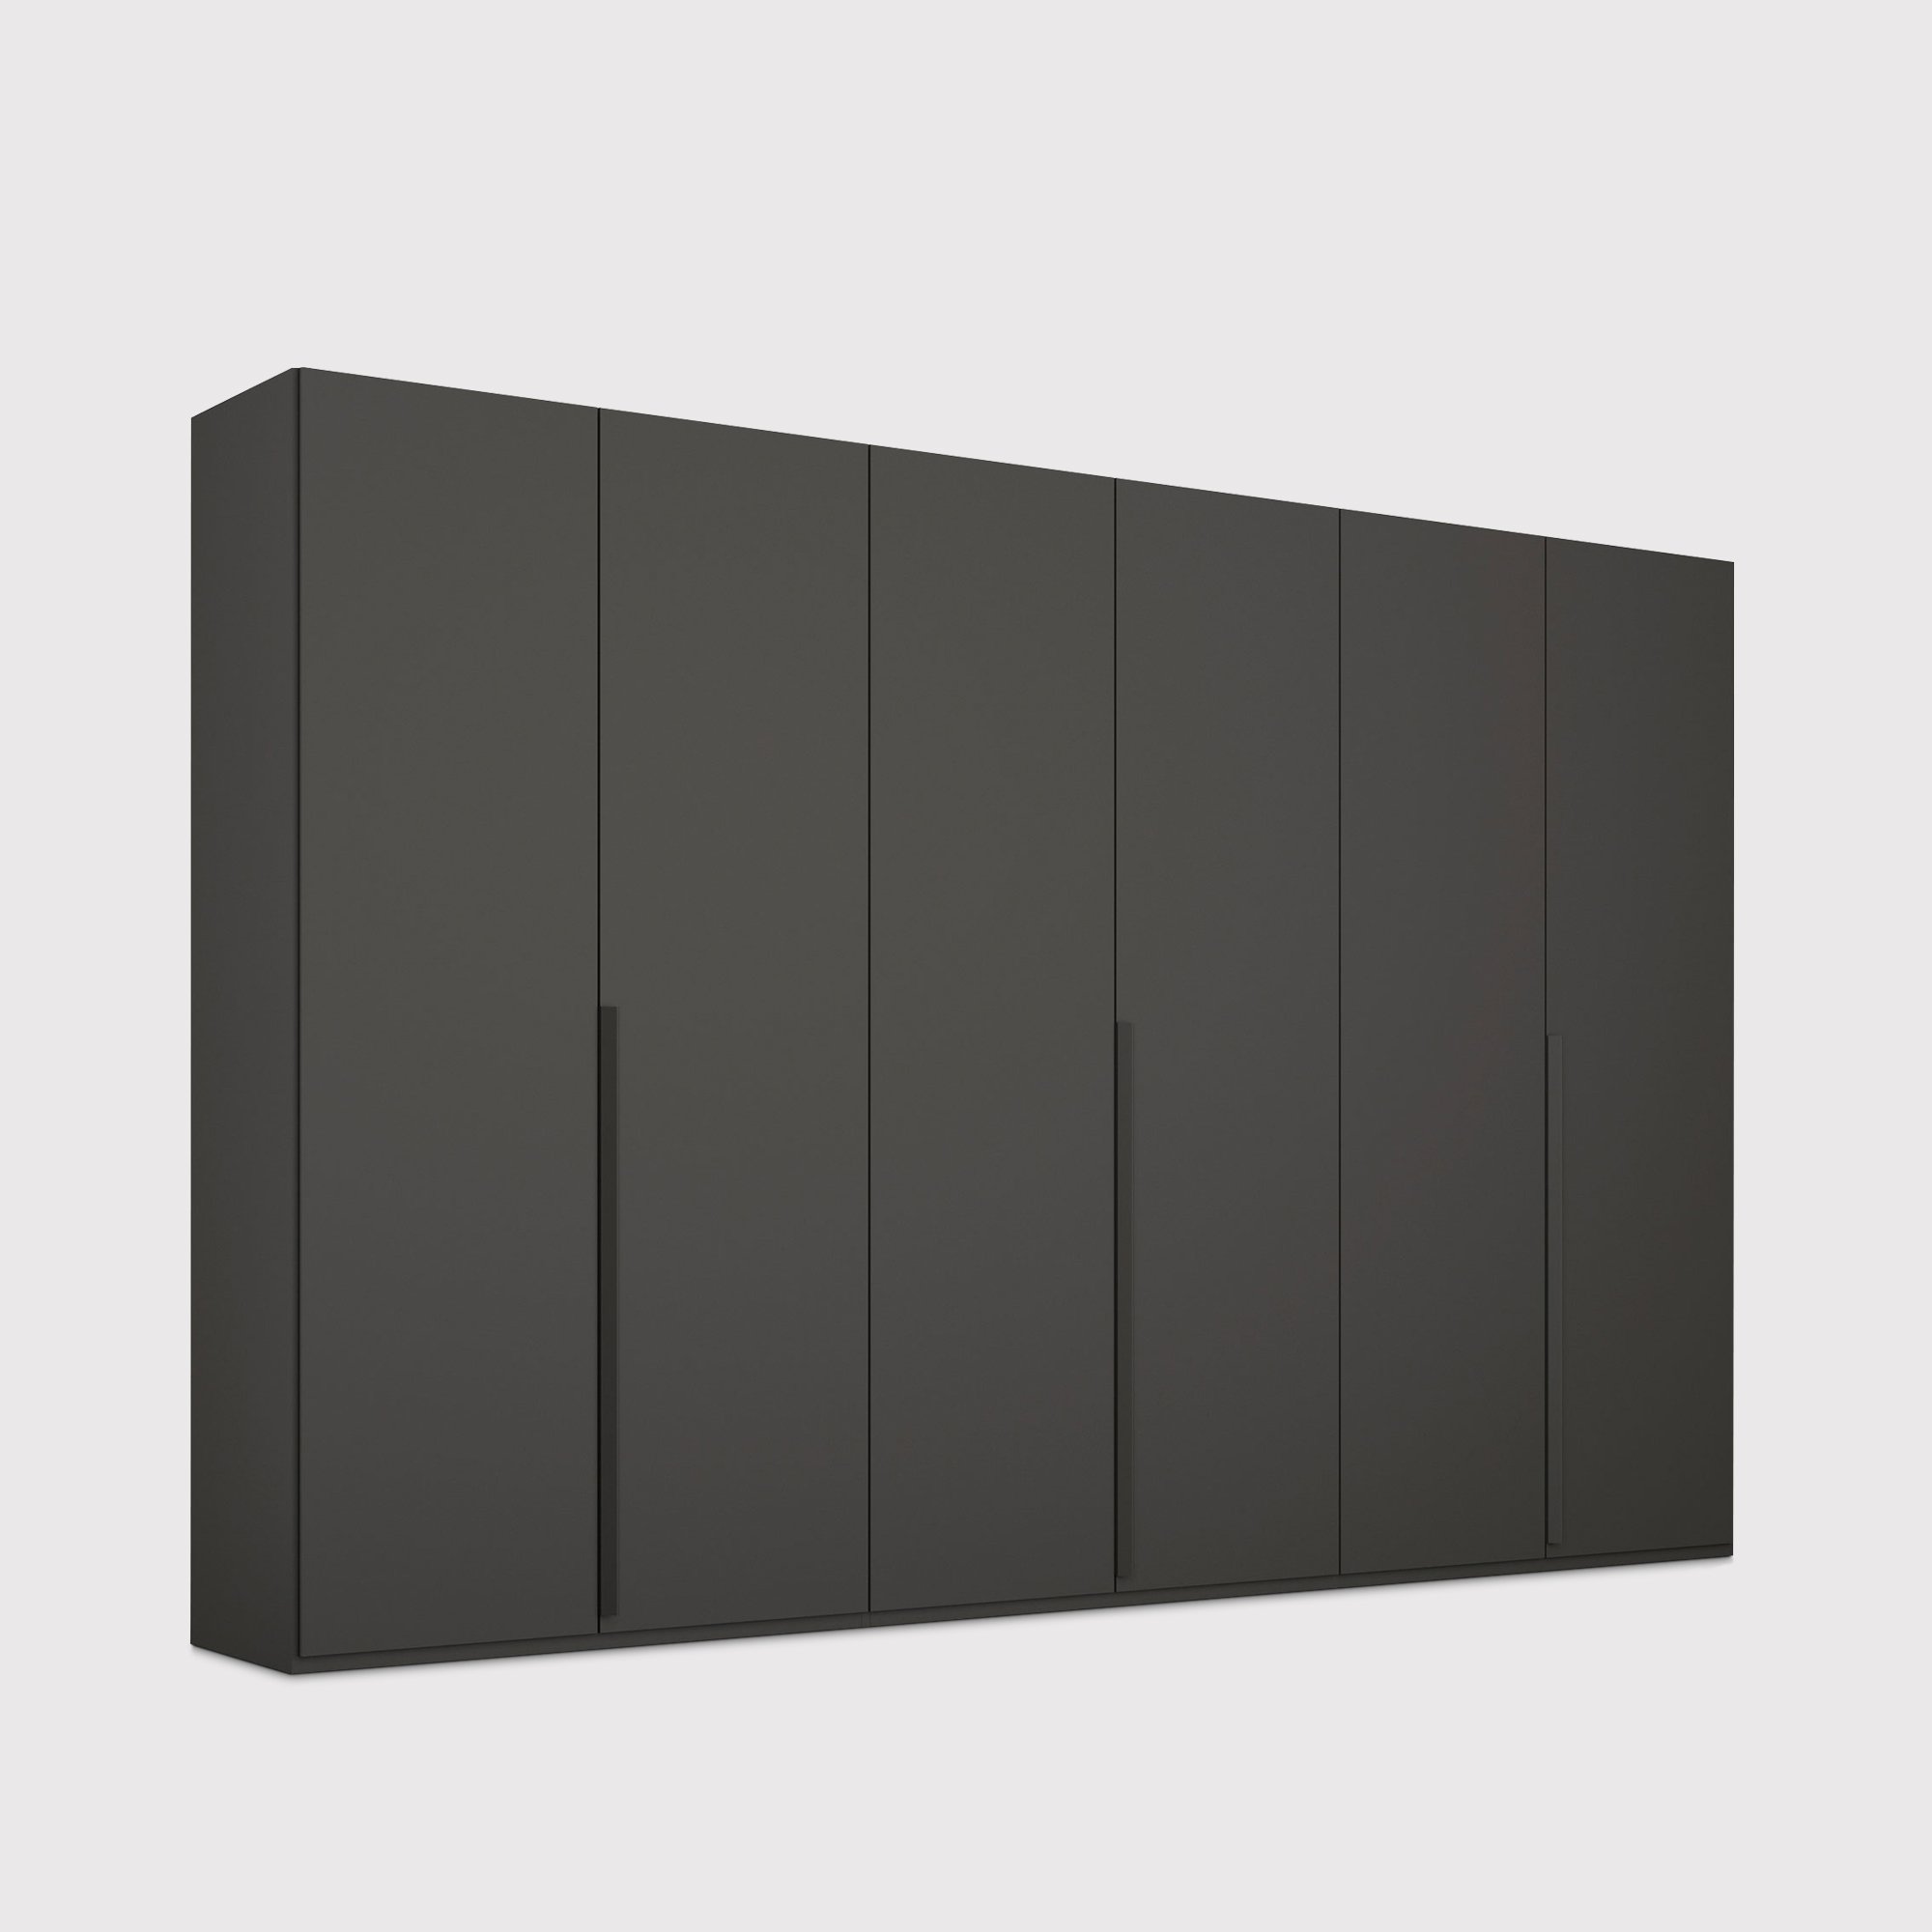 Frans 6 Door Wardrobe 301cm, Black | Barker & Stonehouse